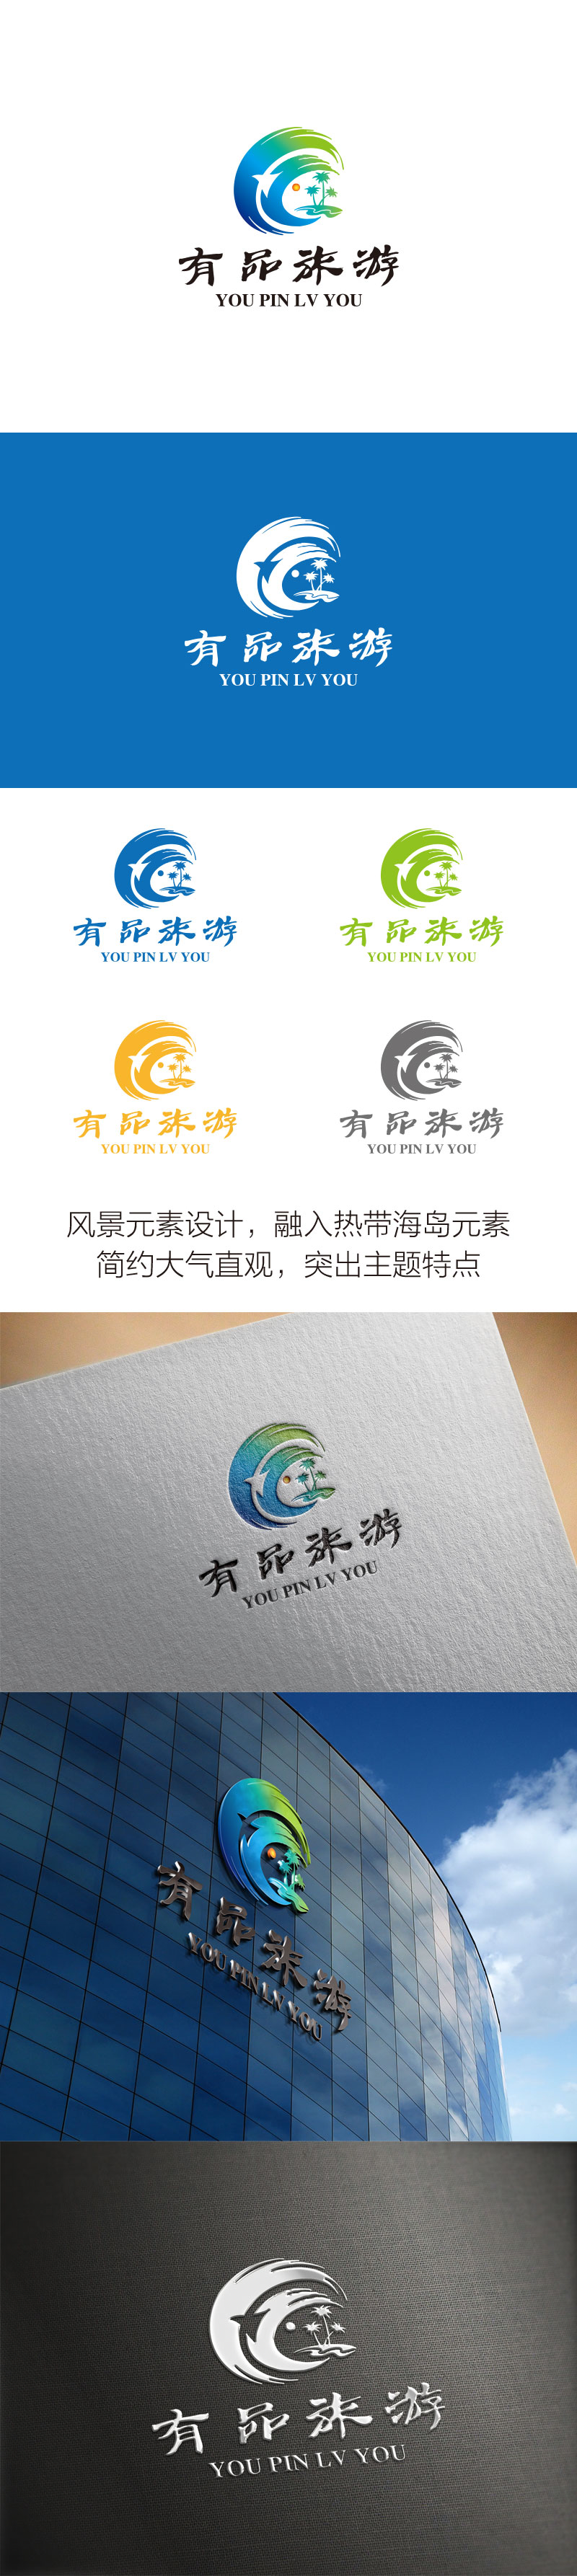 孙金泽的有品旅游logo设计